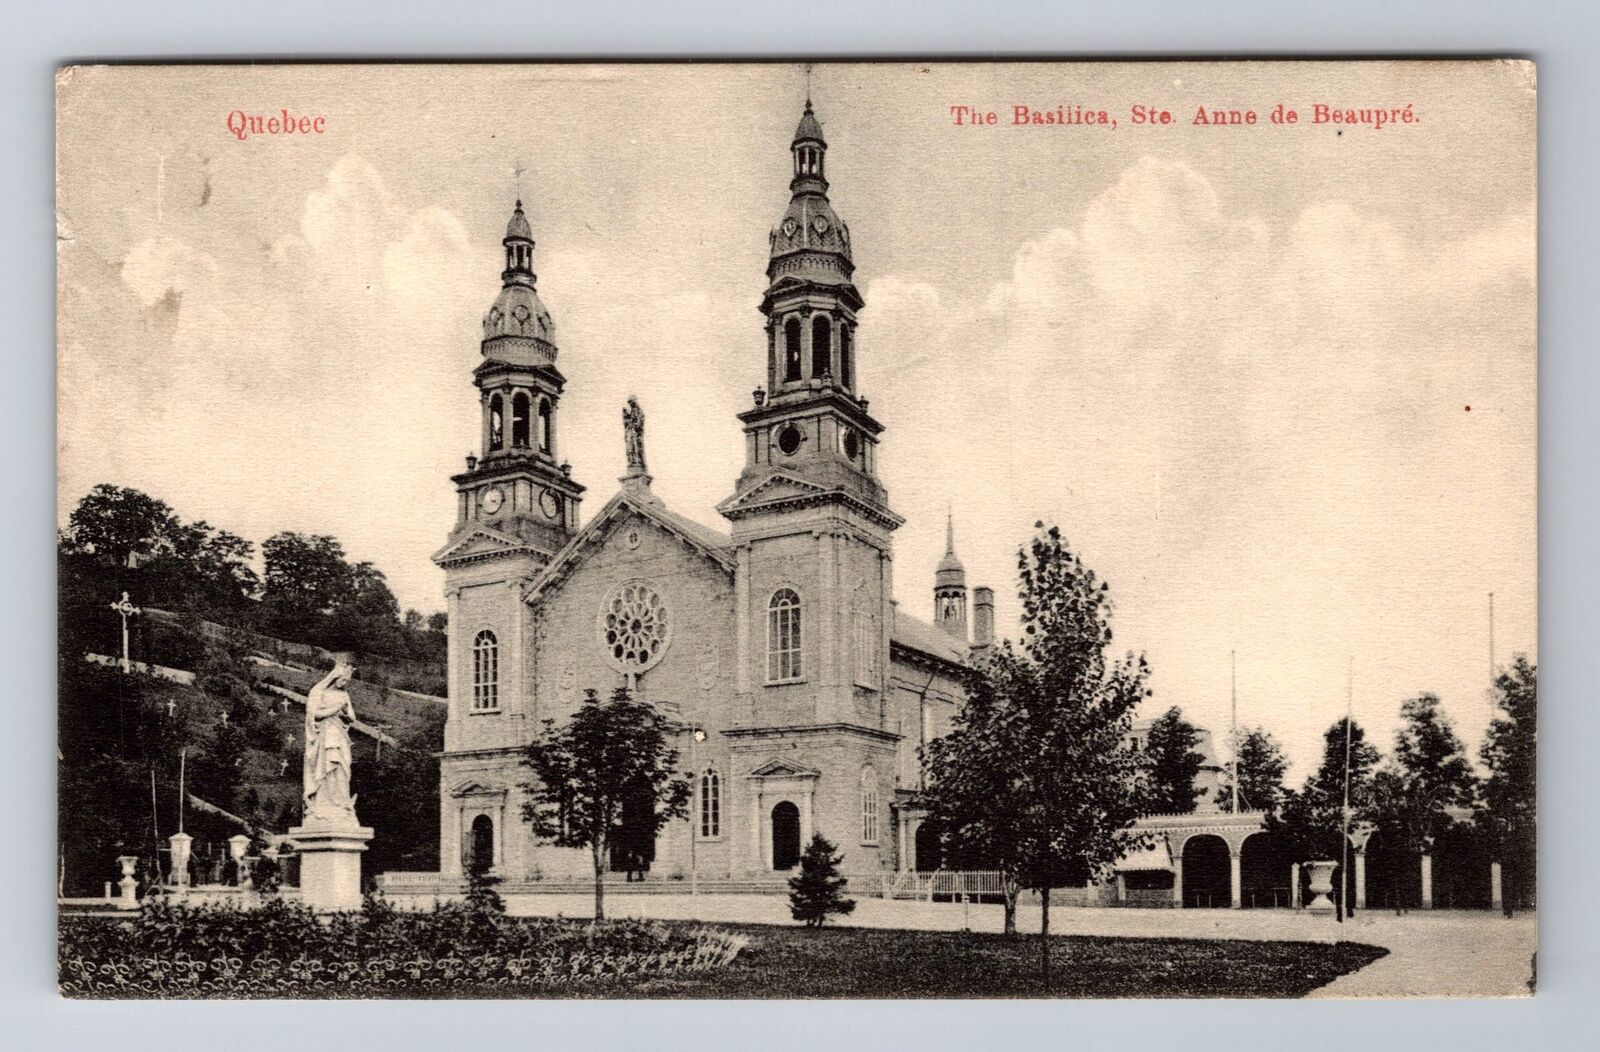 Quebec, Ste Anne de Beaupre the Basilica, Antique Vintage Souvenir Postcard